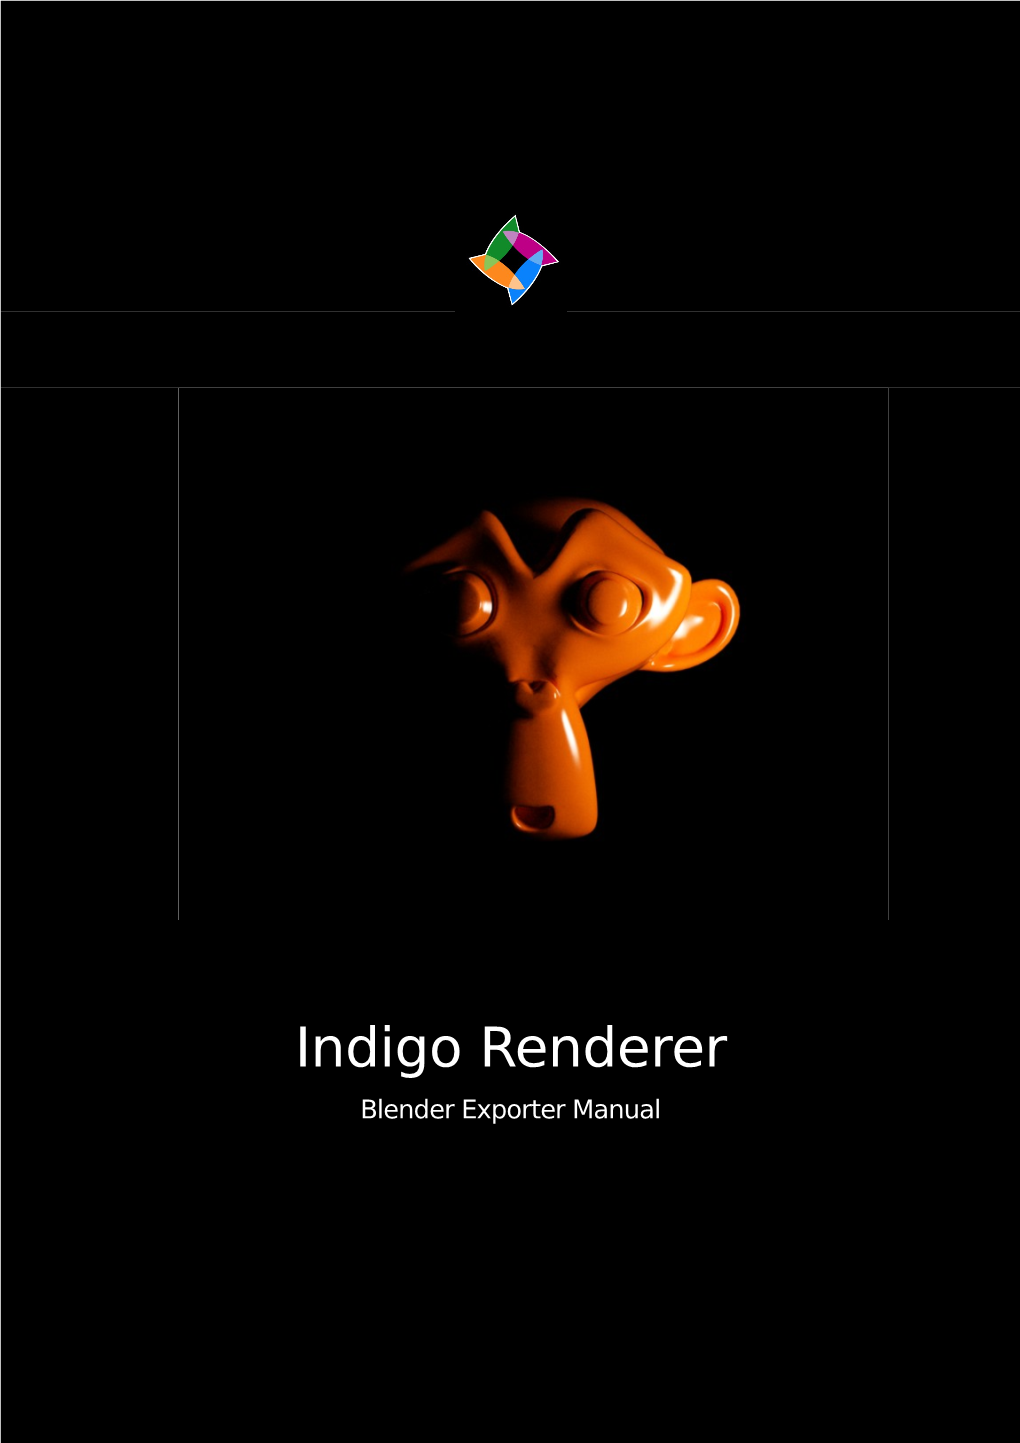 Indigo Renderer Blender Exporter Manual Contents